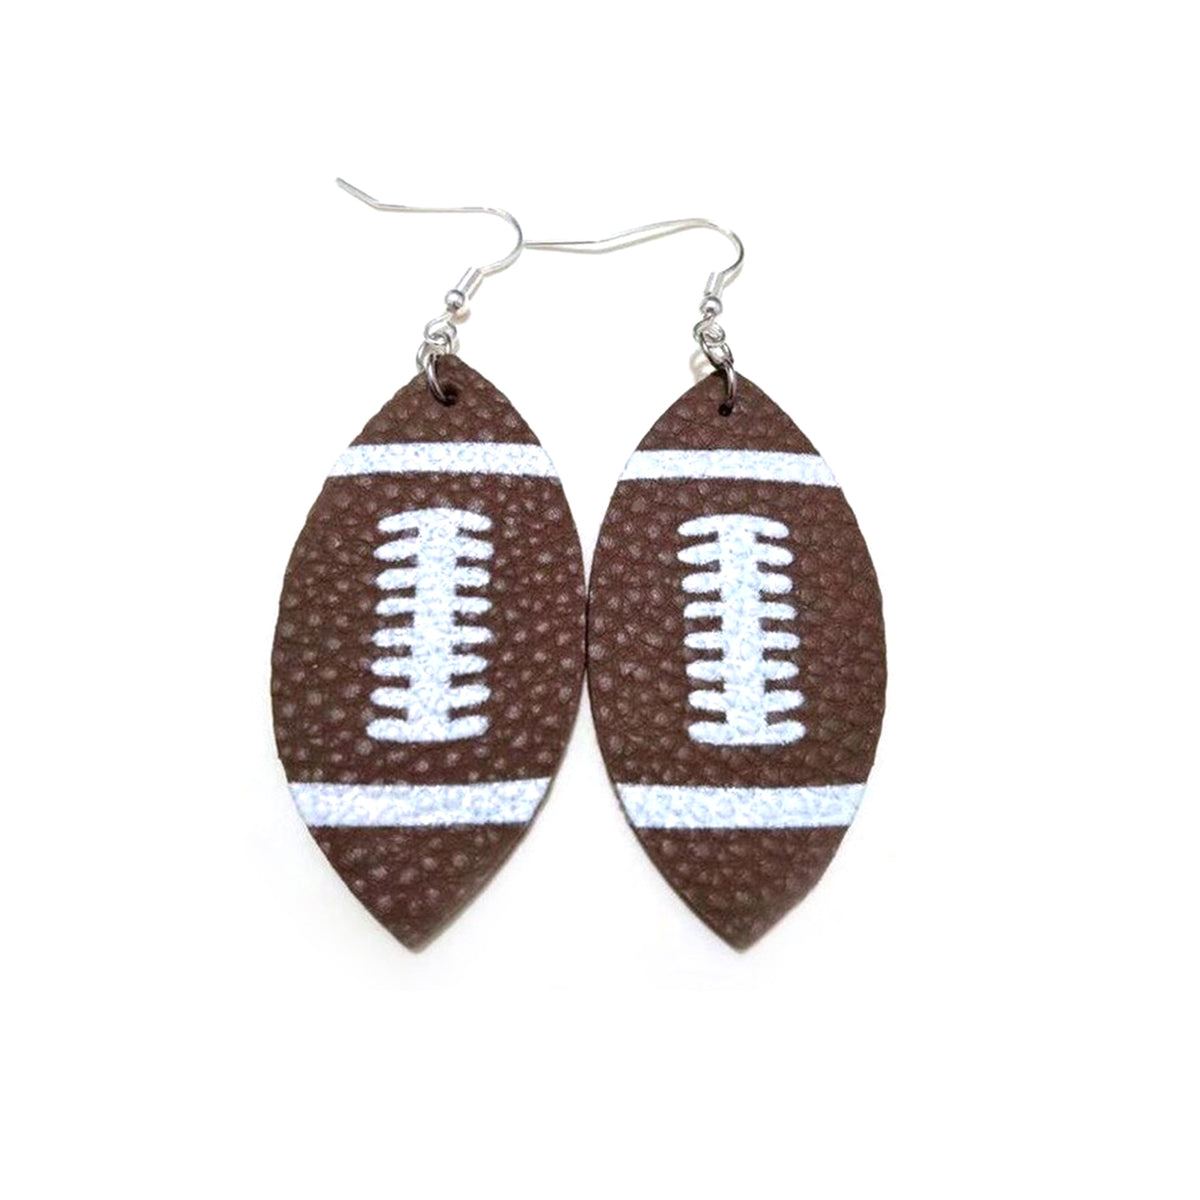 Football themed leather teardrop dangle earrings